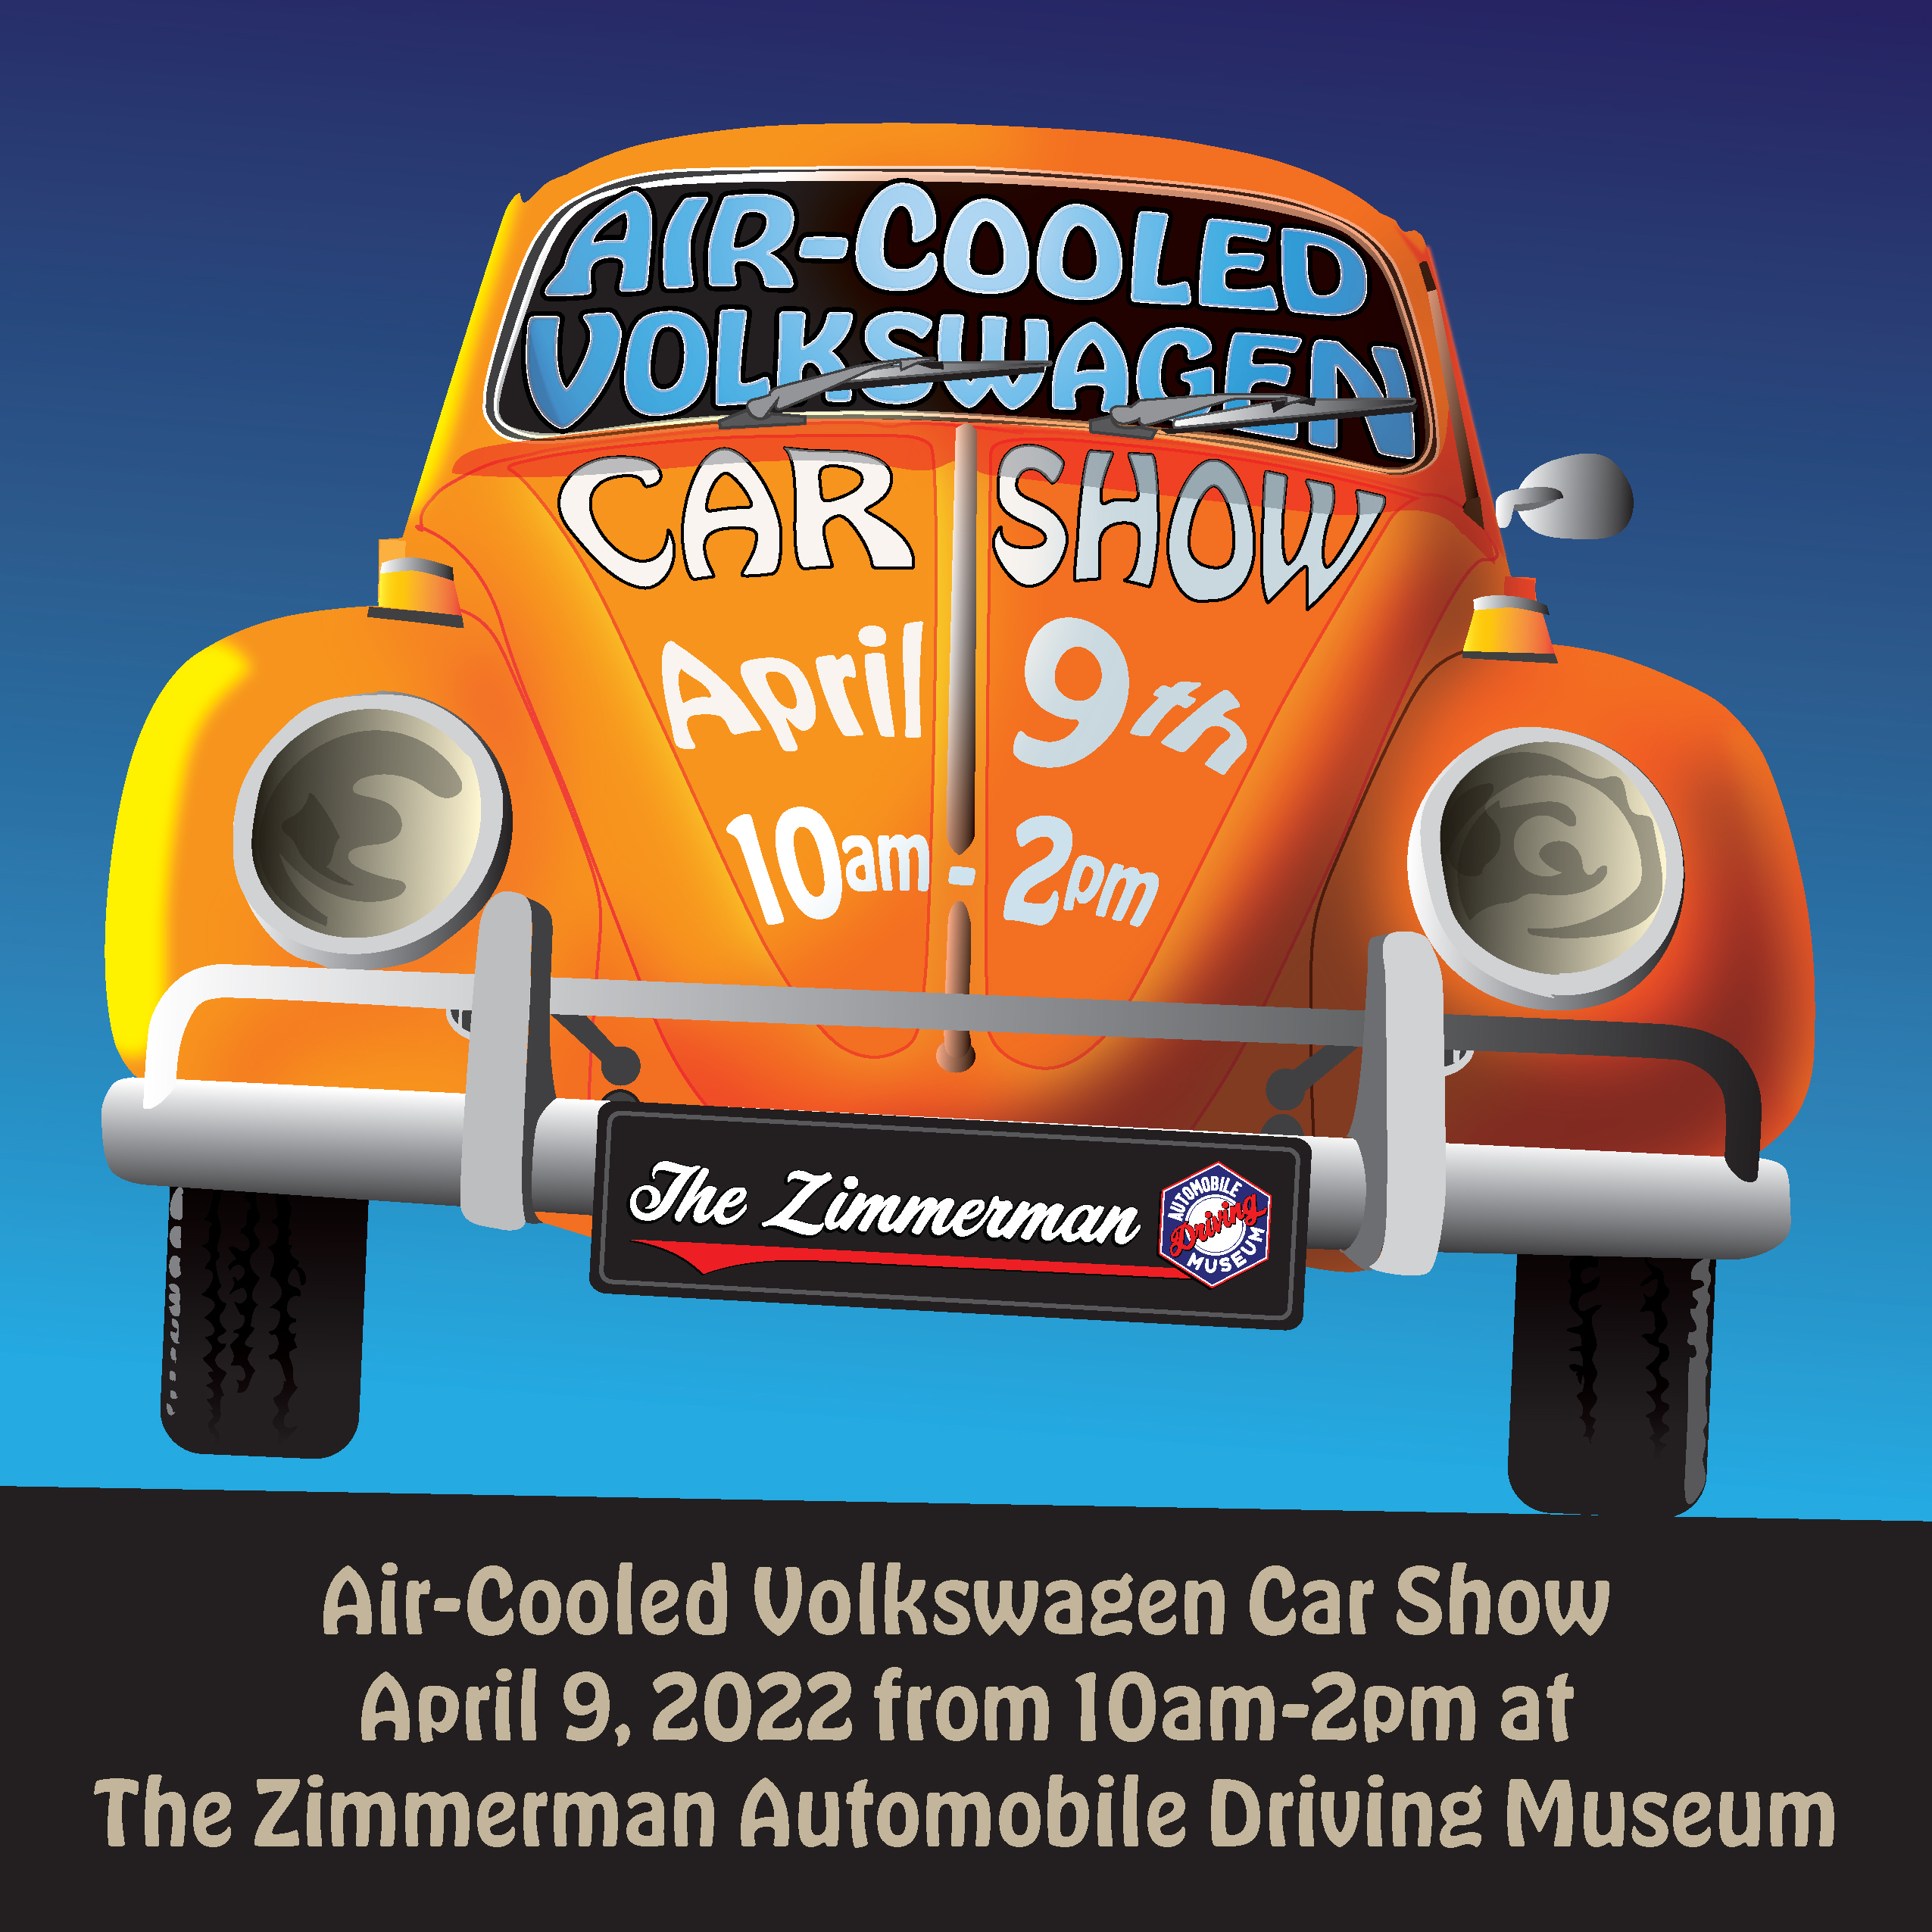 VW Car Show in El Segundo